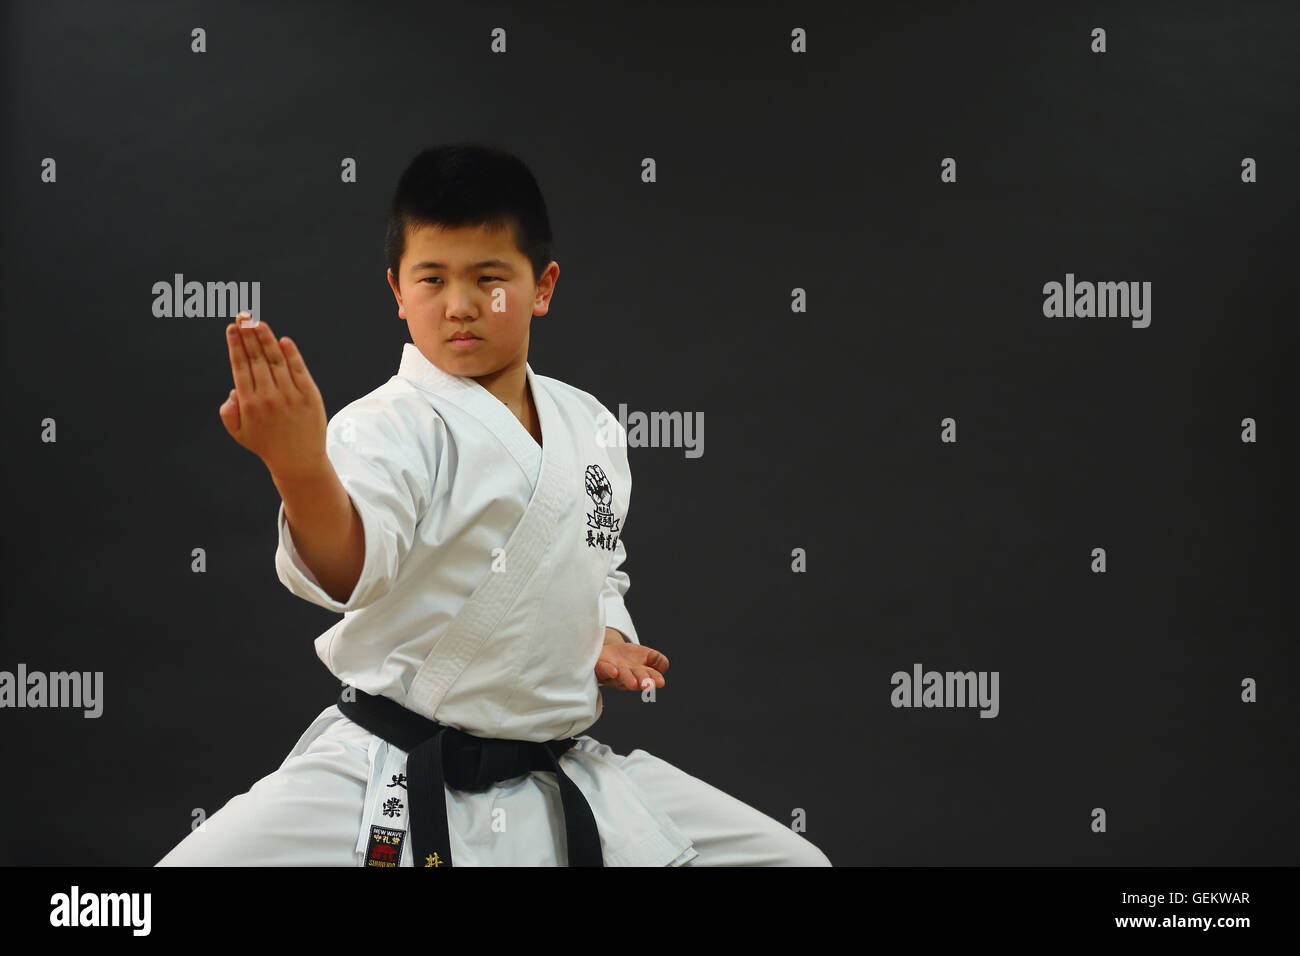 Japanische Kinder in Karate uniform auf schwarzem Hintergrund Stockfoto